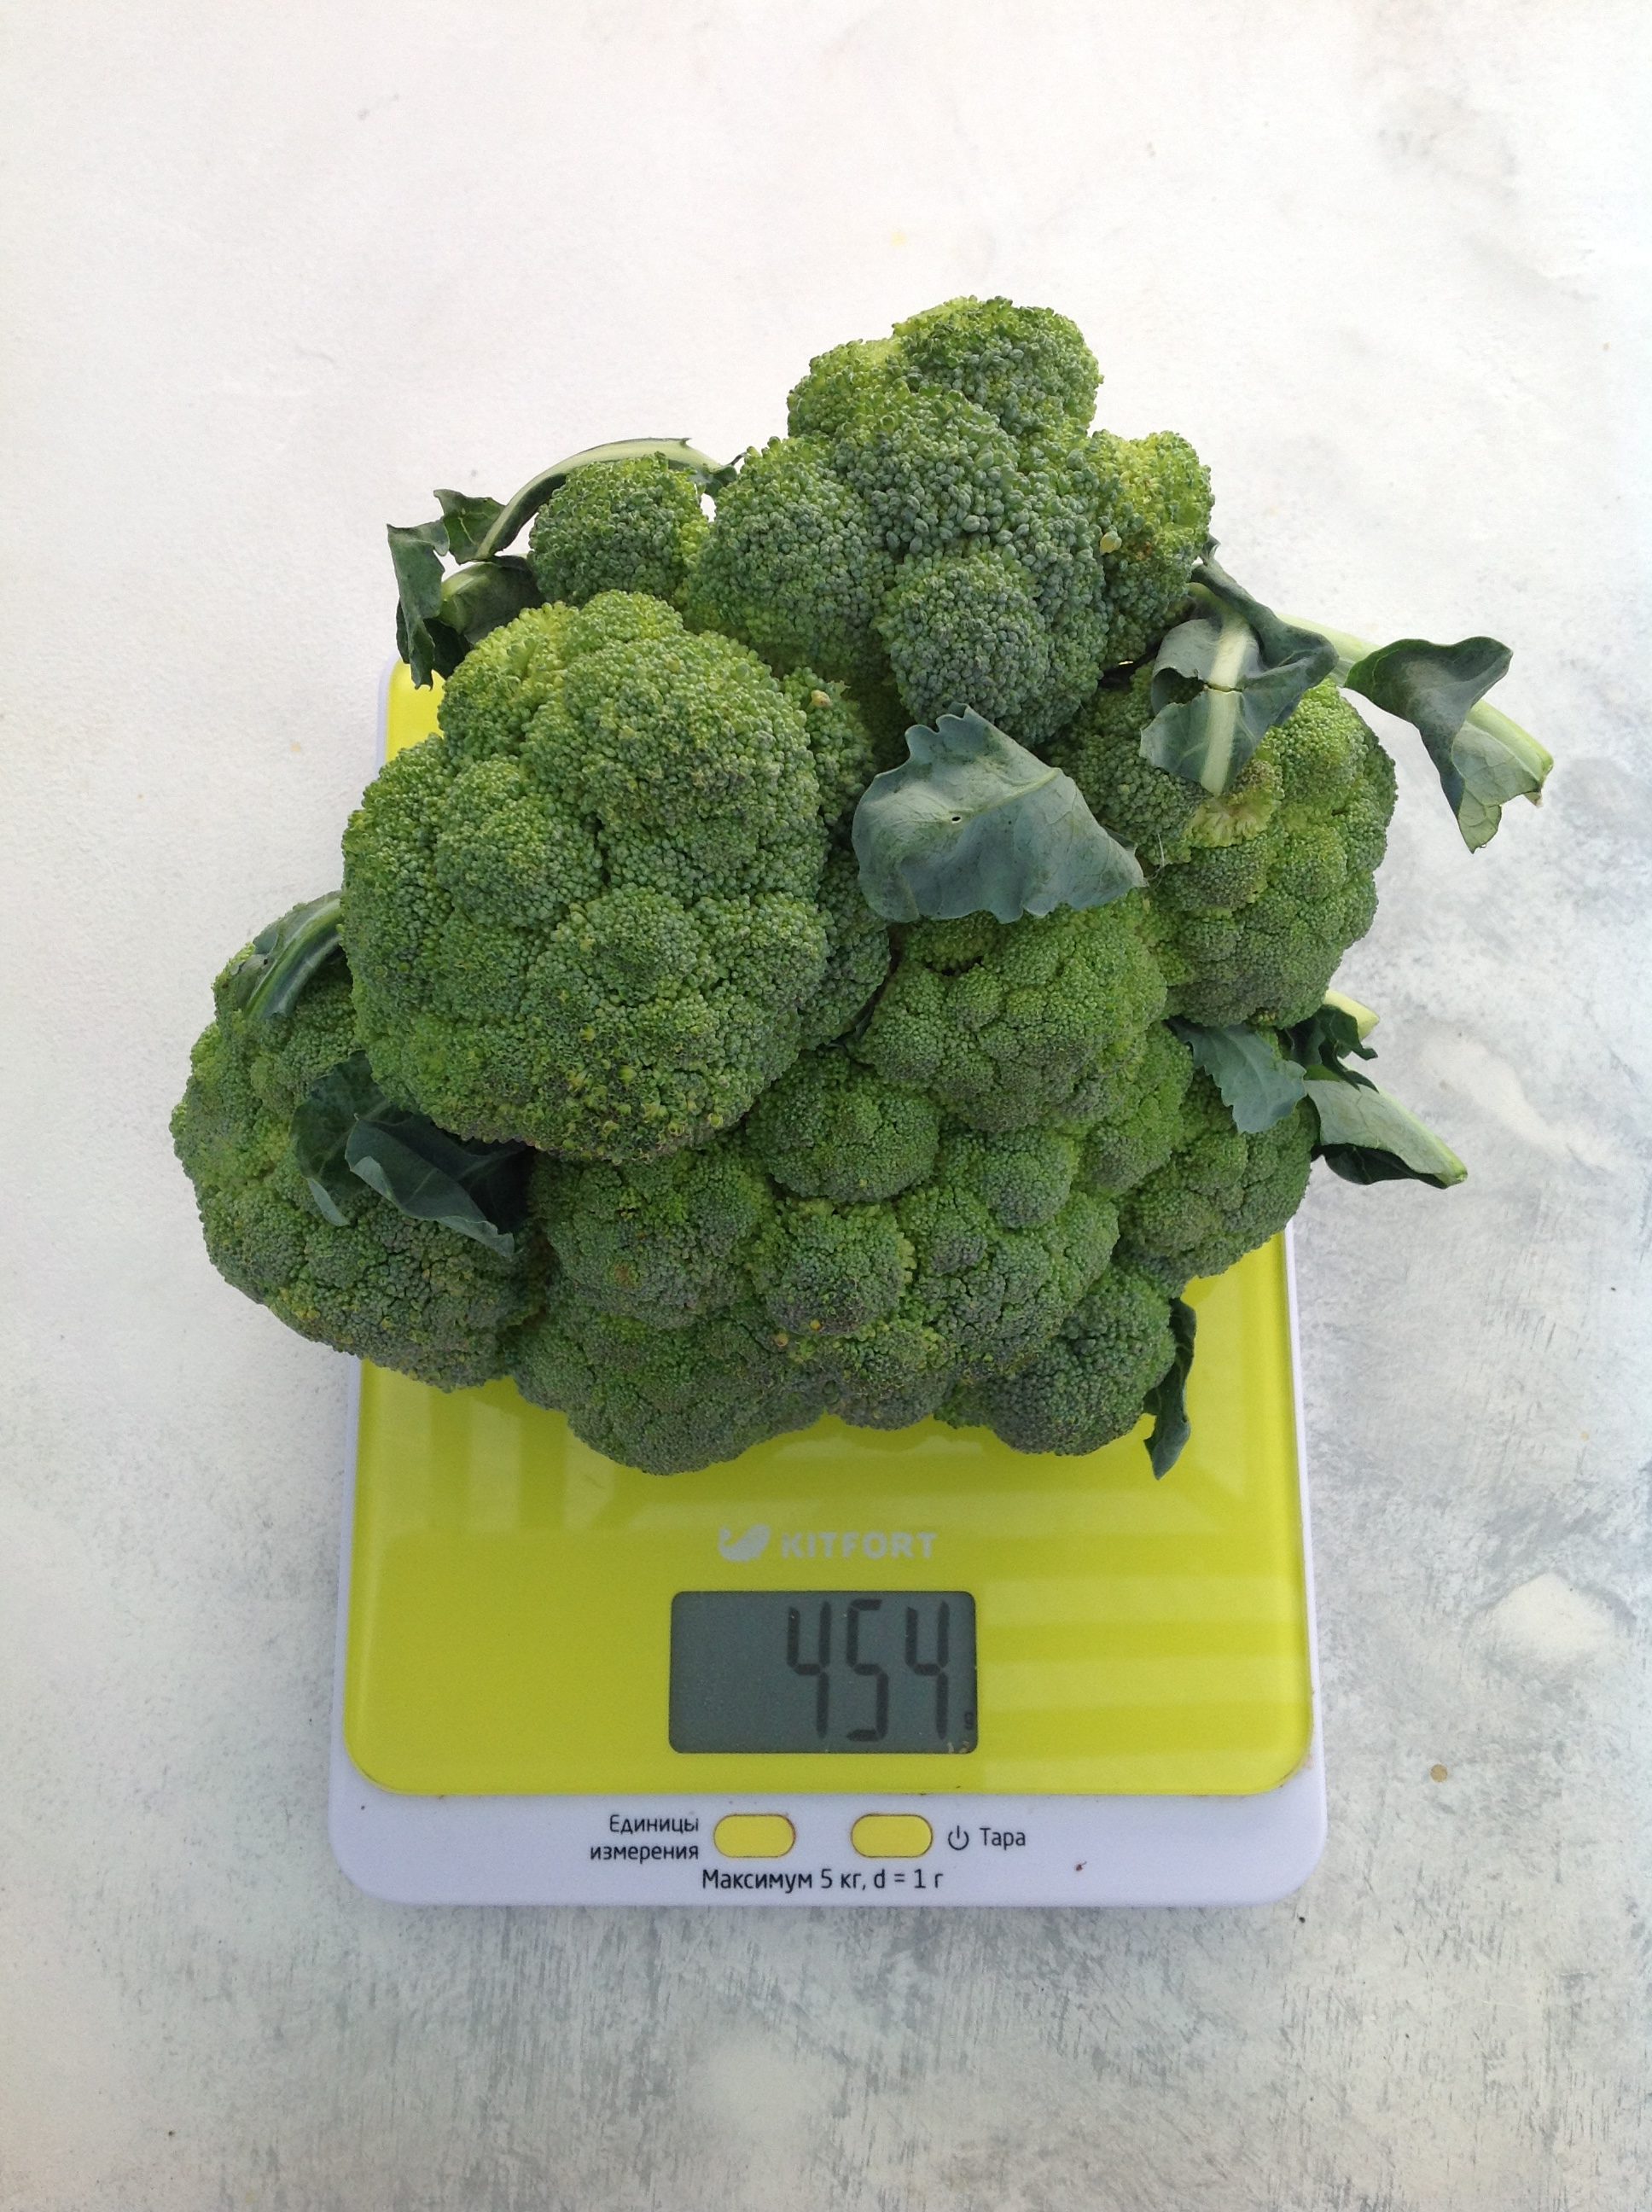 brokoļi vidēja svara